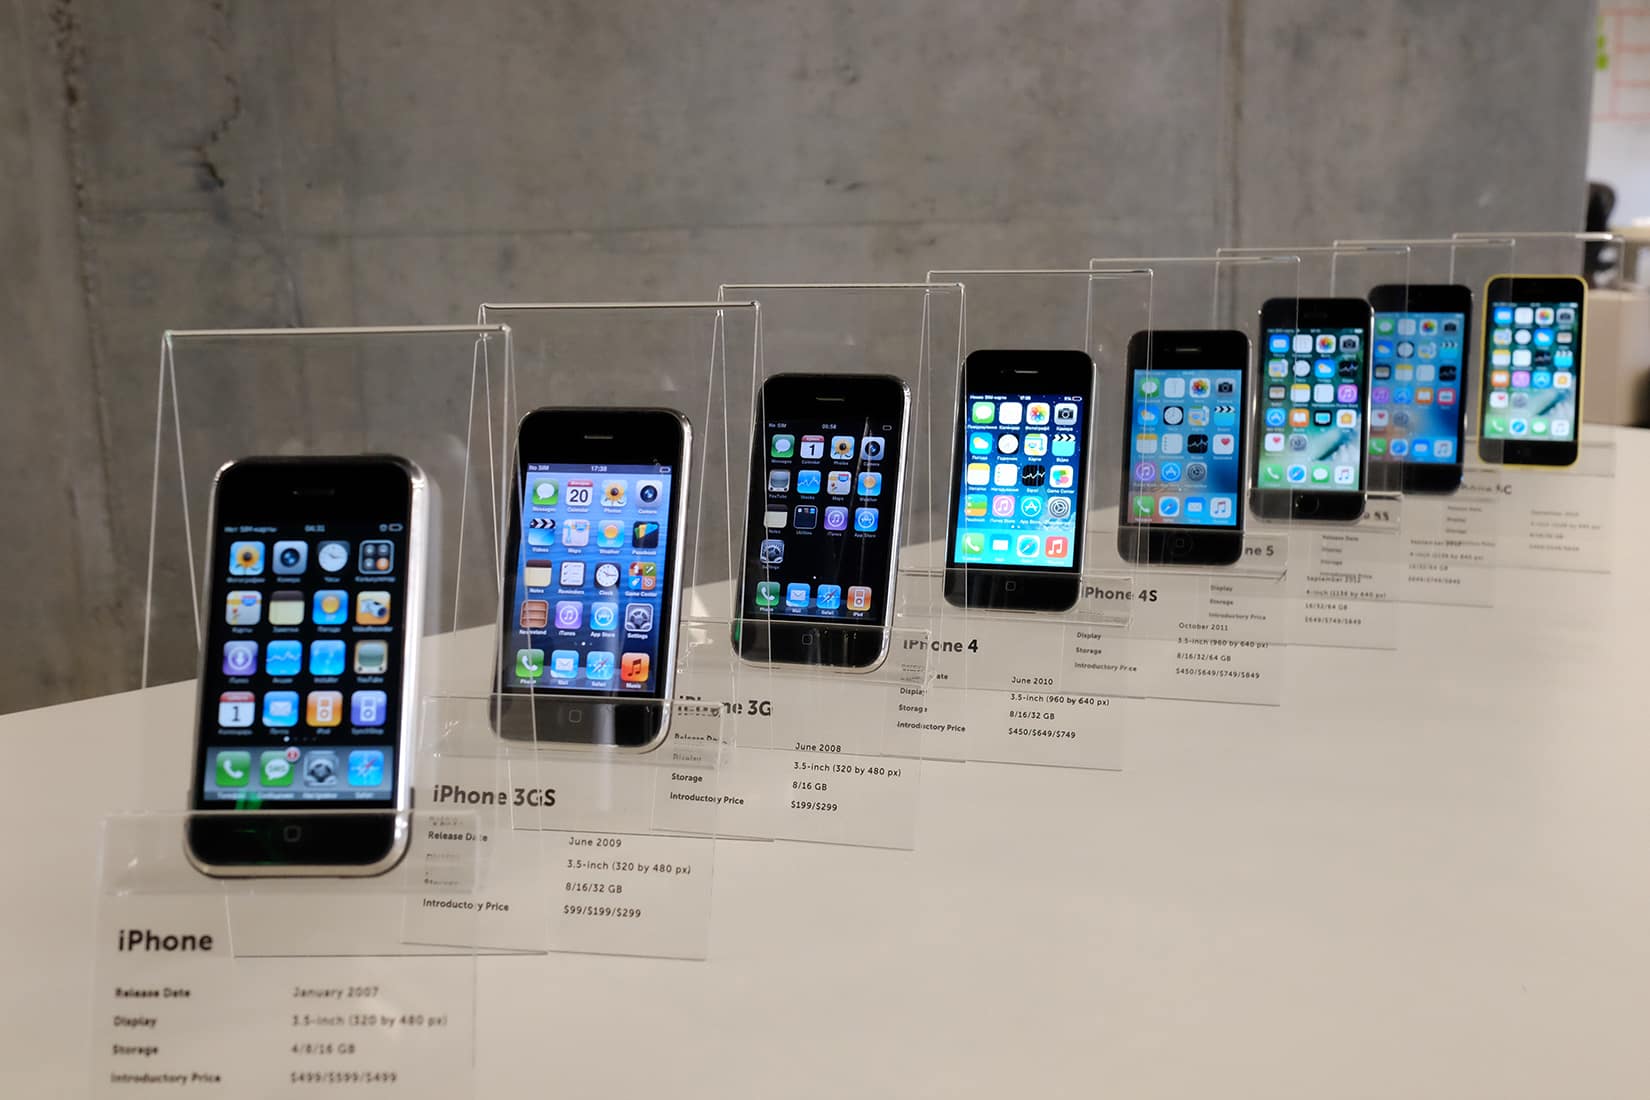 iPhones at MacPaw museum